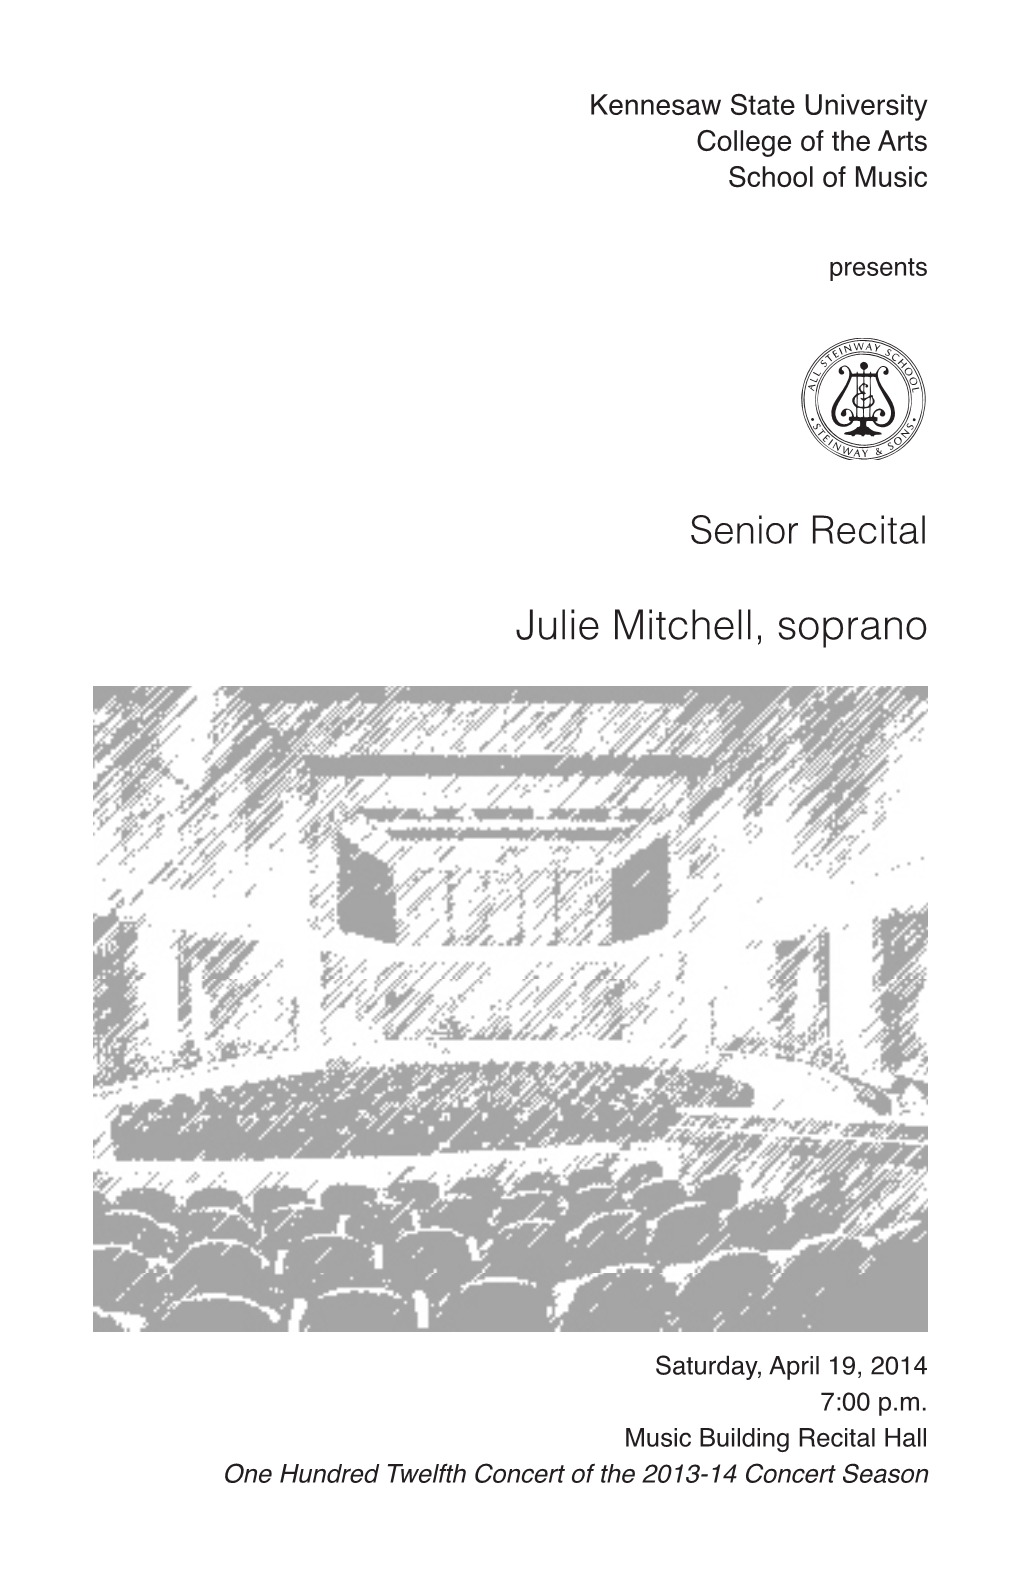 Senior Recital: Julie Mitchell, Soprano